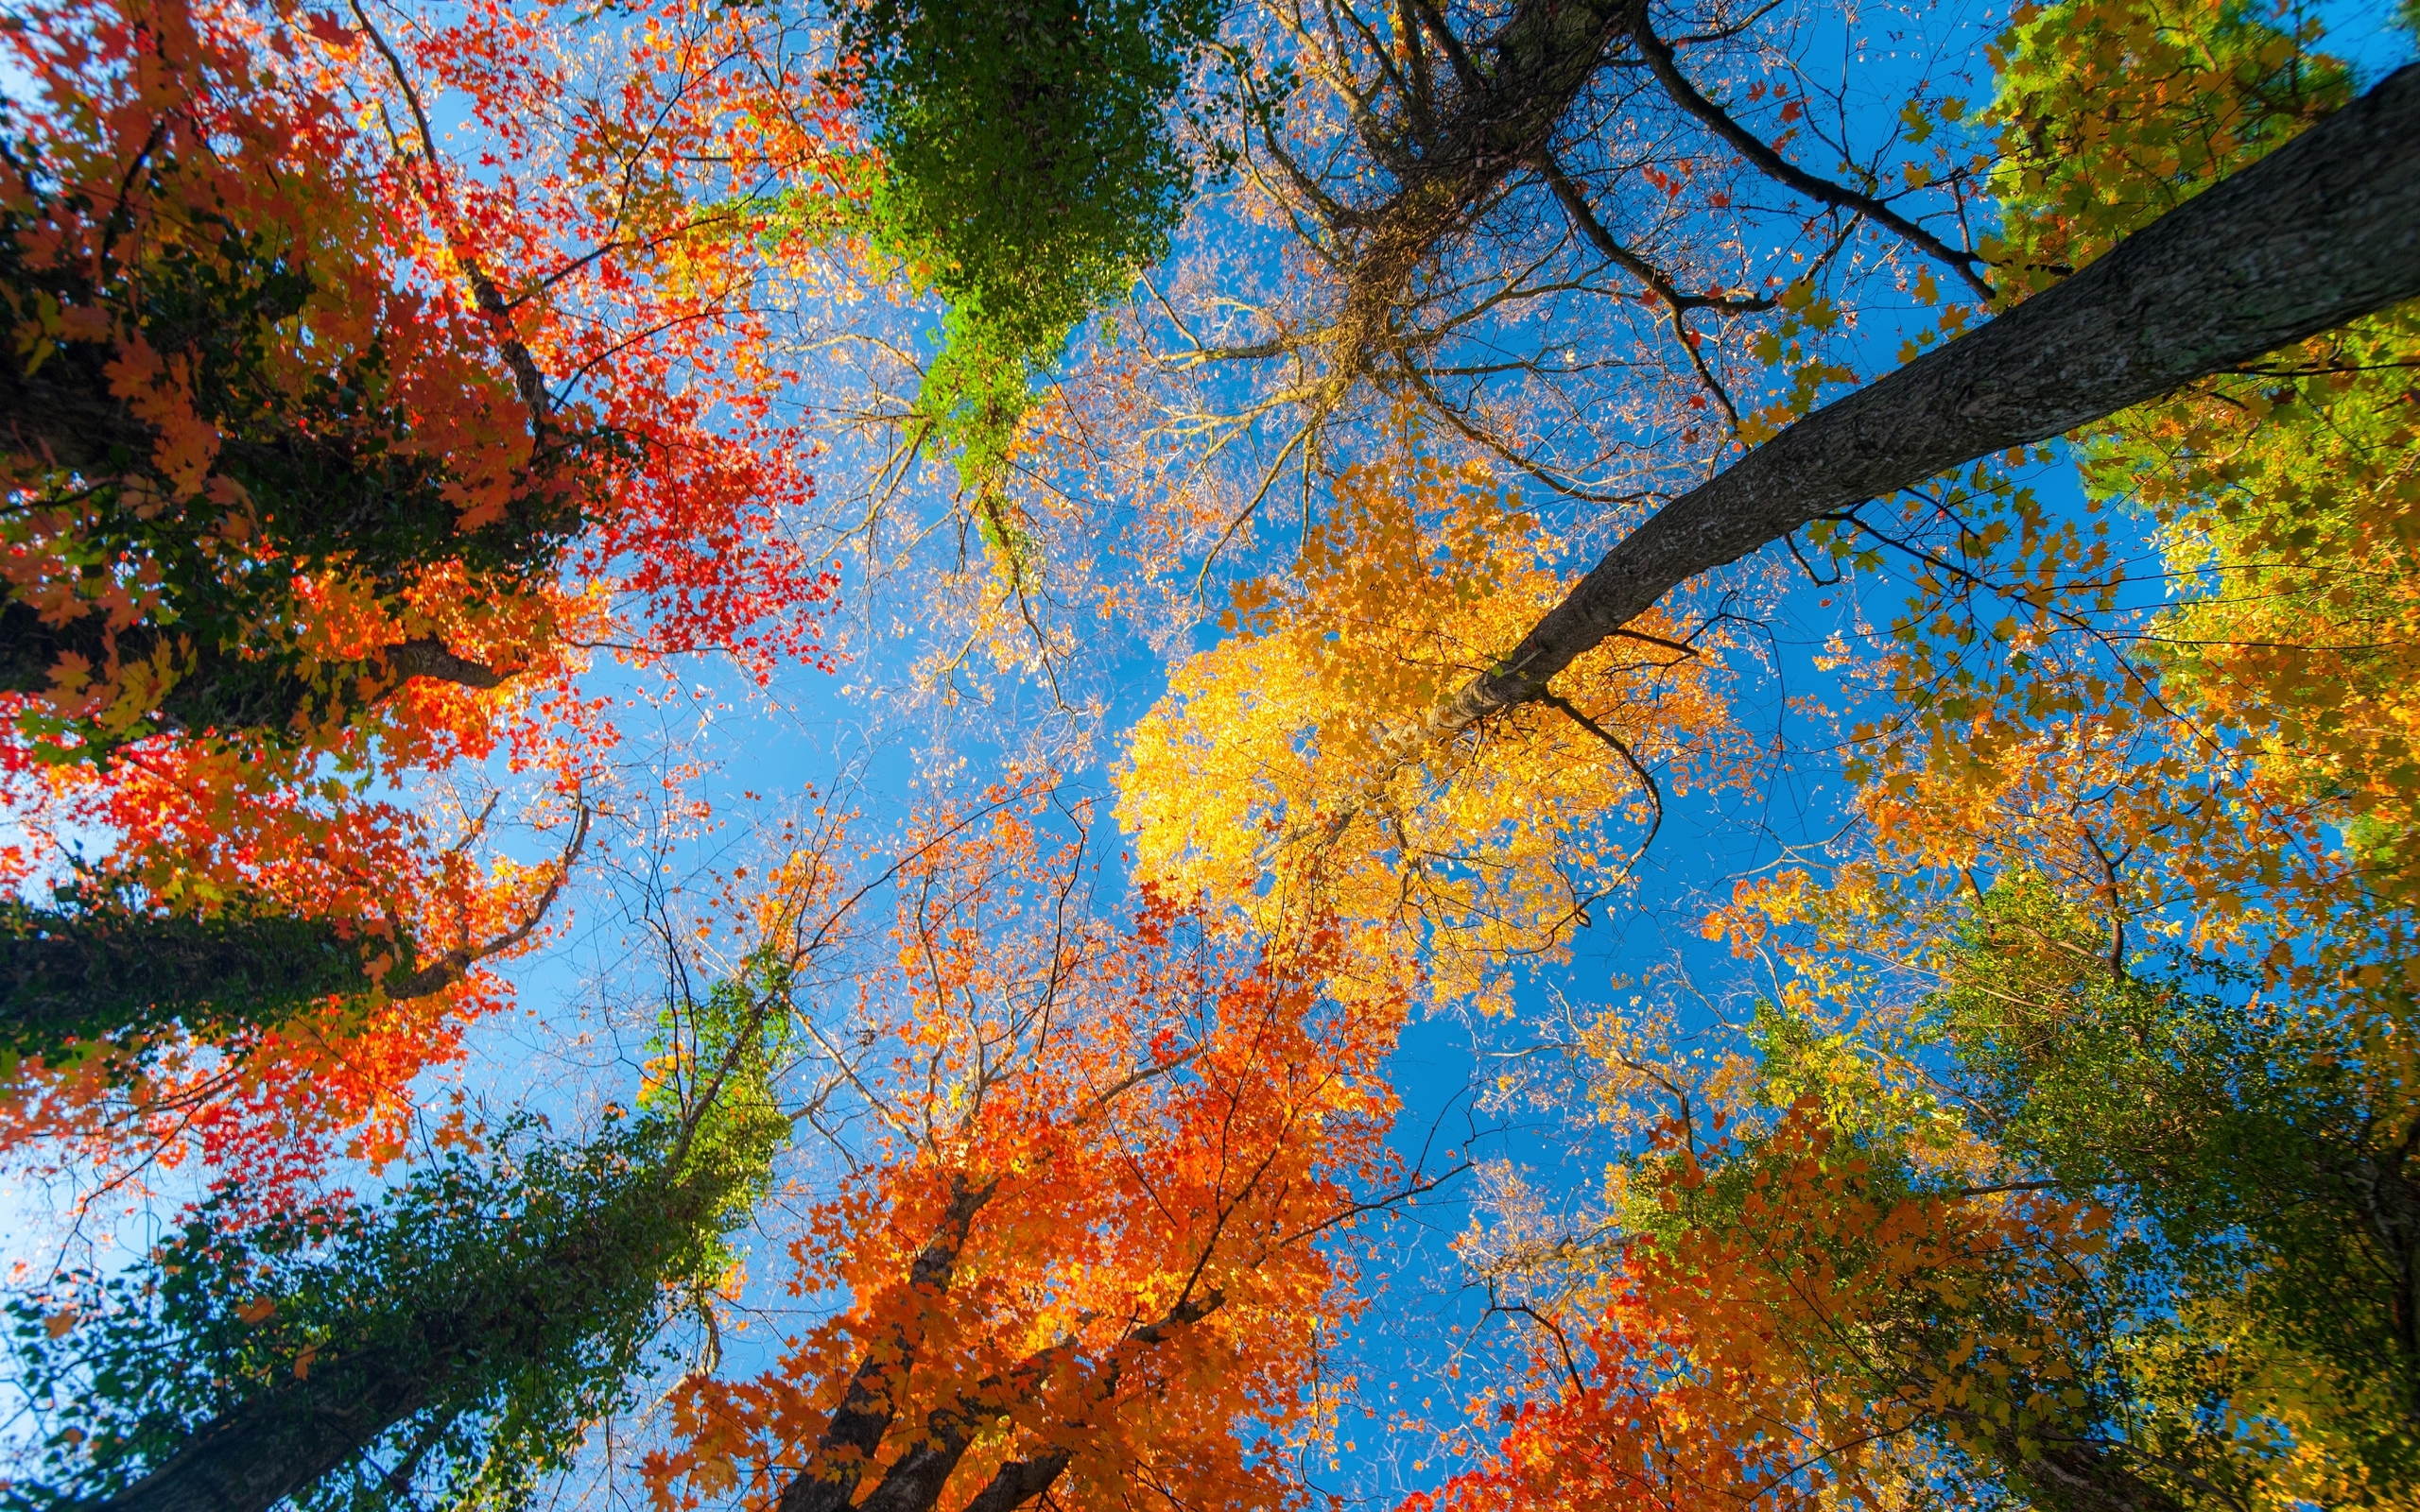 Картинка: Деревья, кроны, листья, ветки, желтый, зелёный, оранжевый, небо, голубой, осень